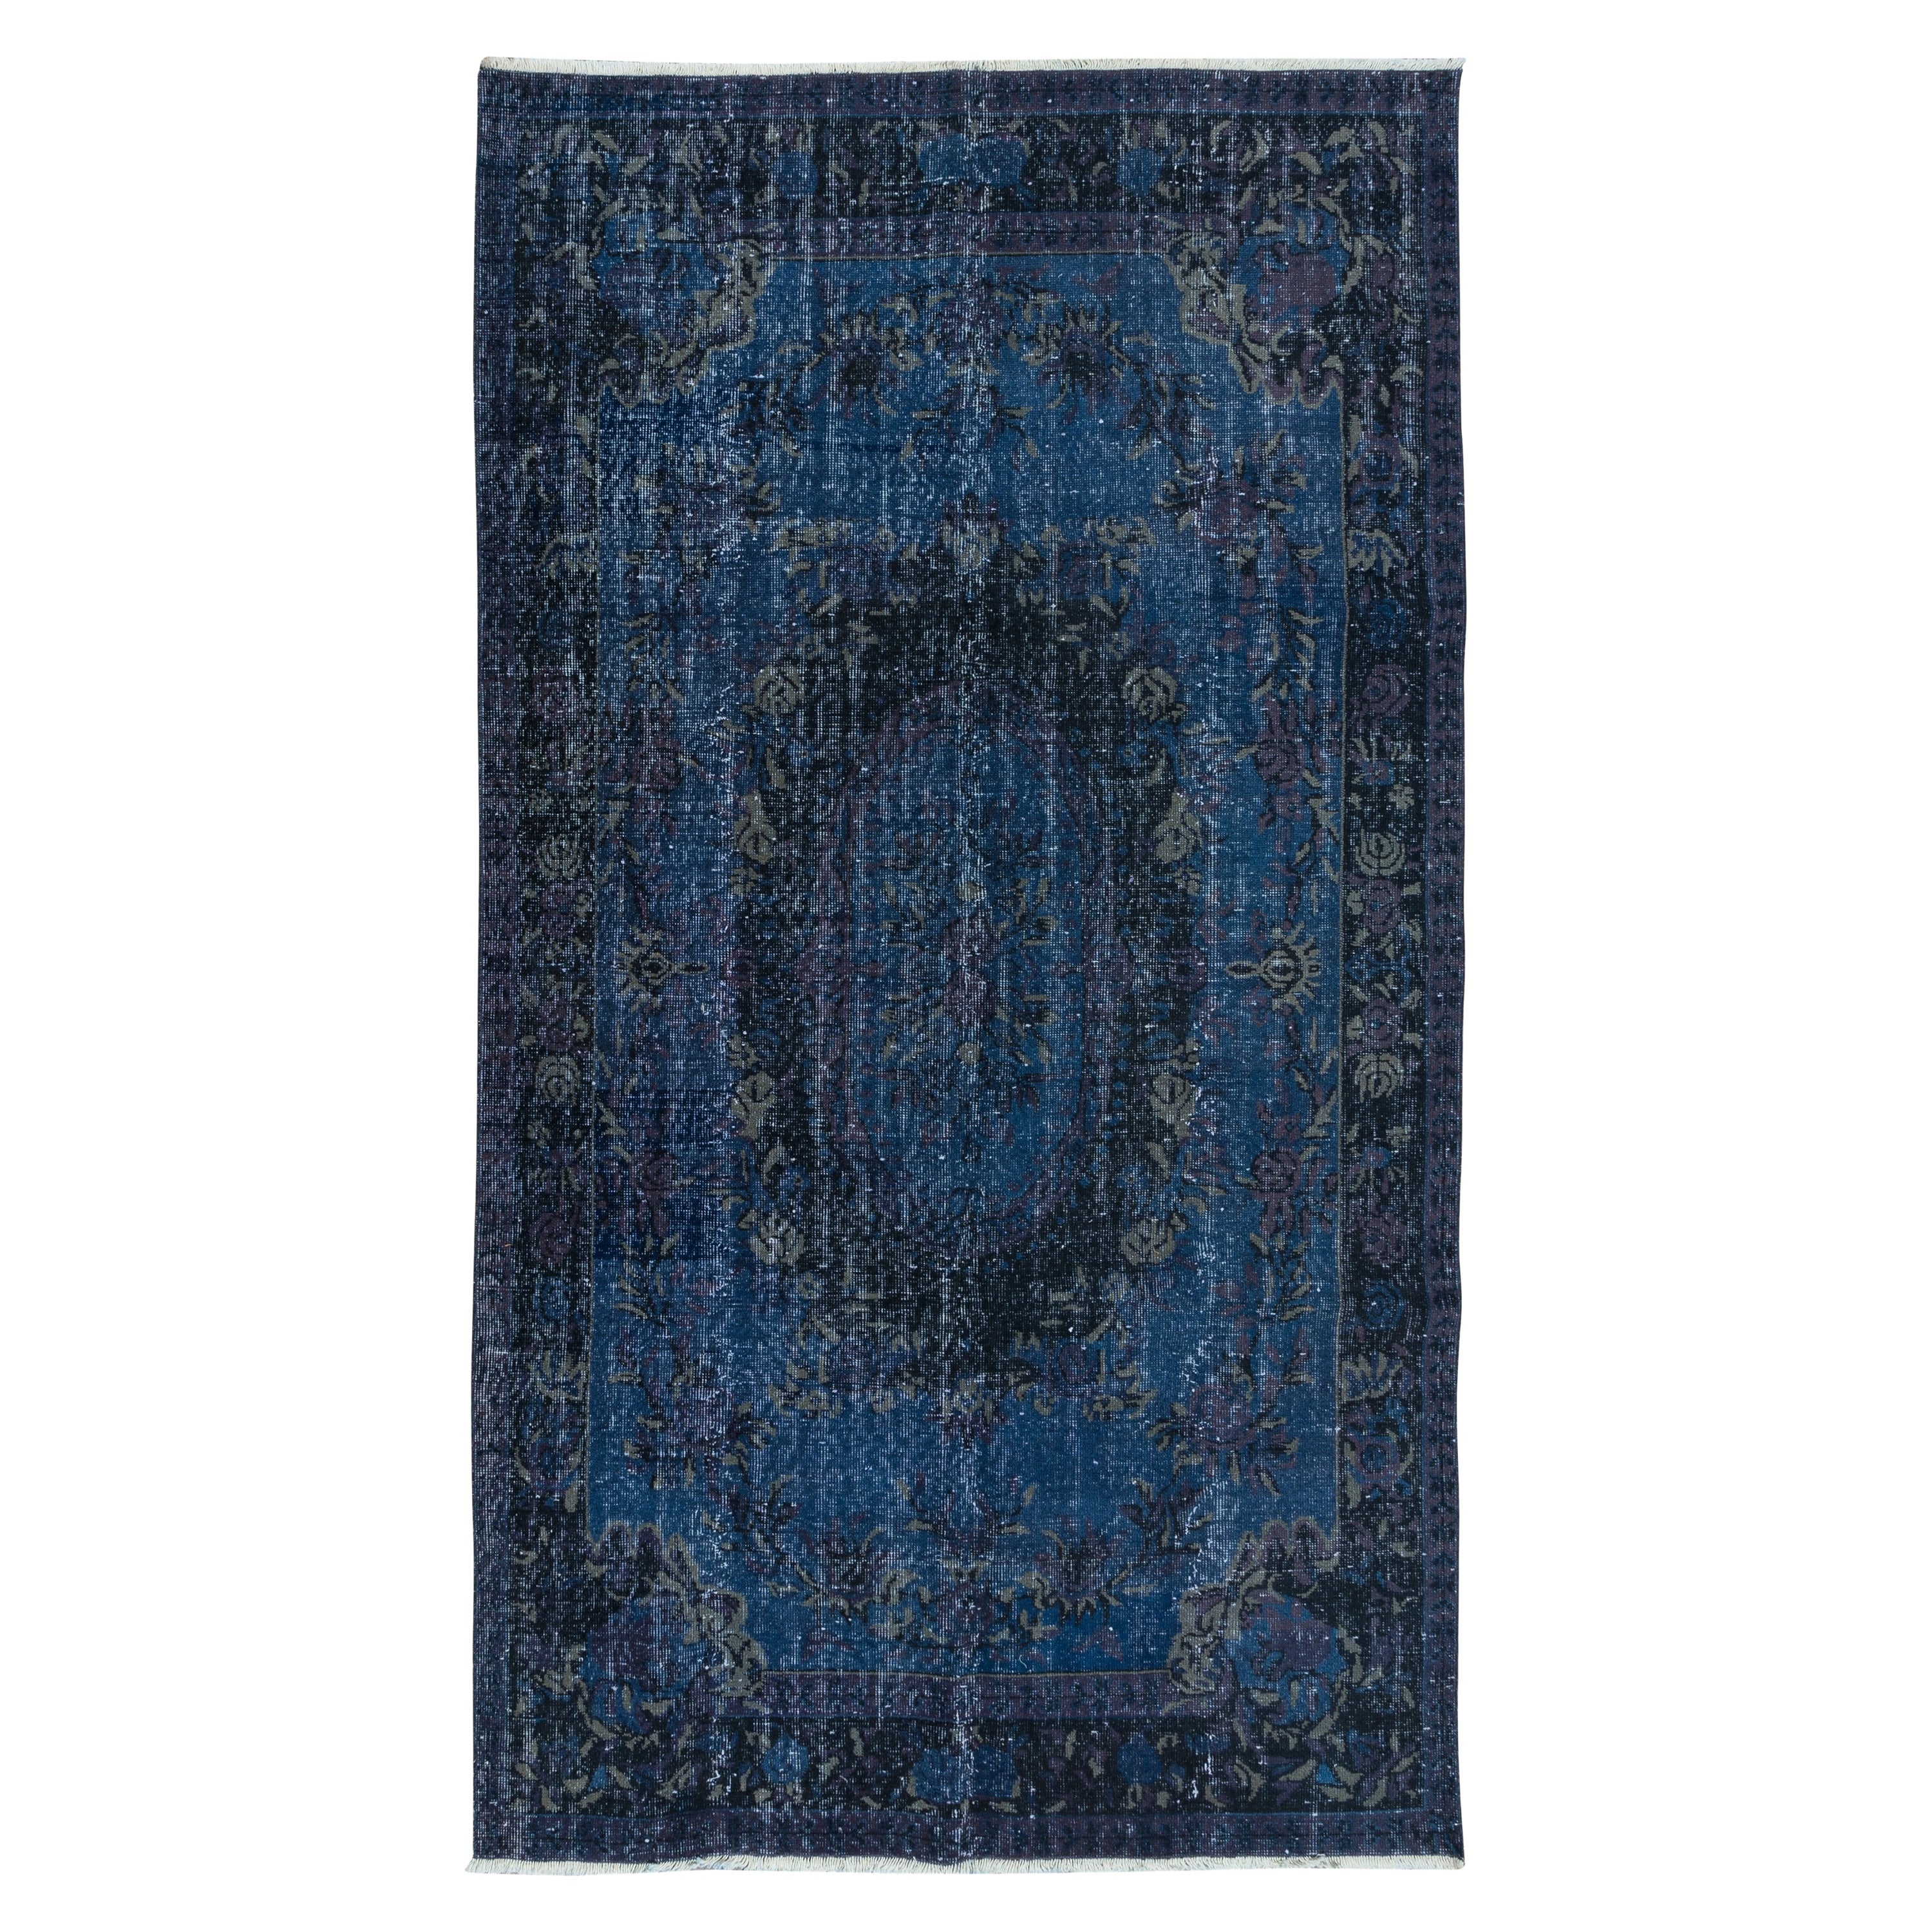 5.7x10.2 Ft Französischer Aubusson-Teppich in Dunkelblau, handgefertigter türkischer Teppich